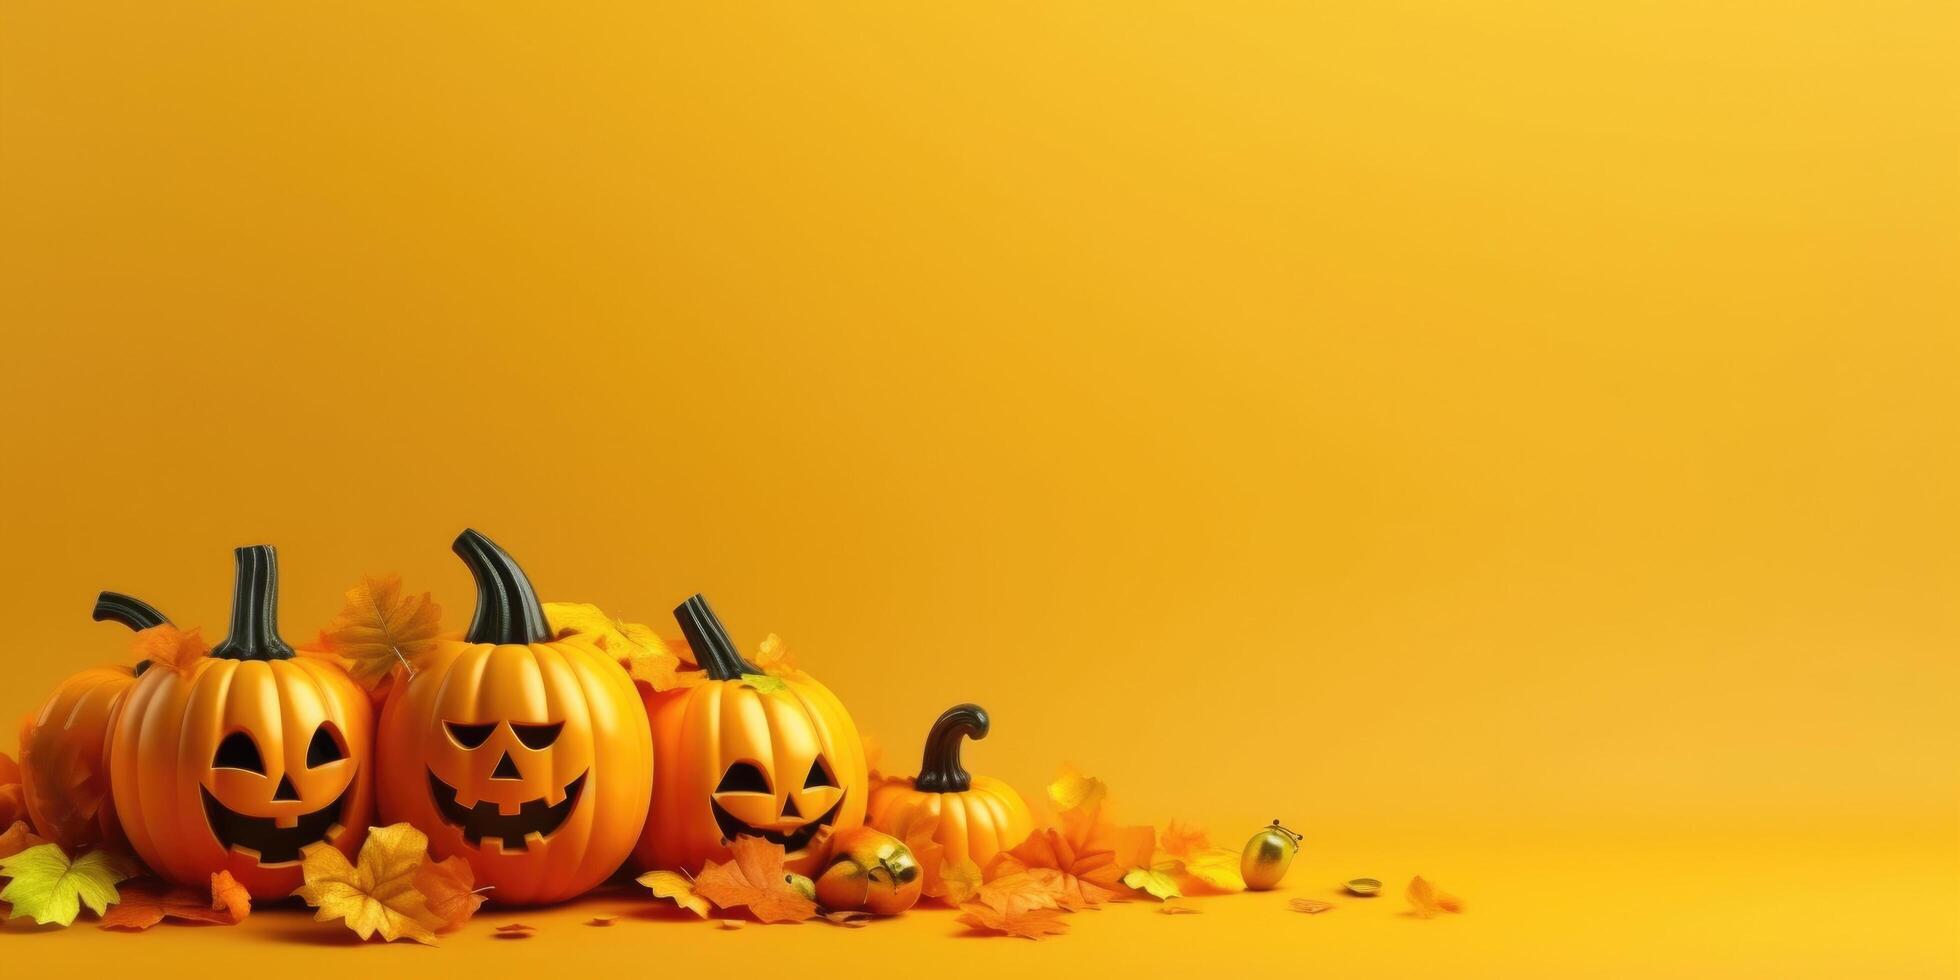 Yellow vivid Halloween background. Illustration photo